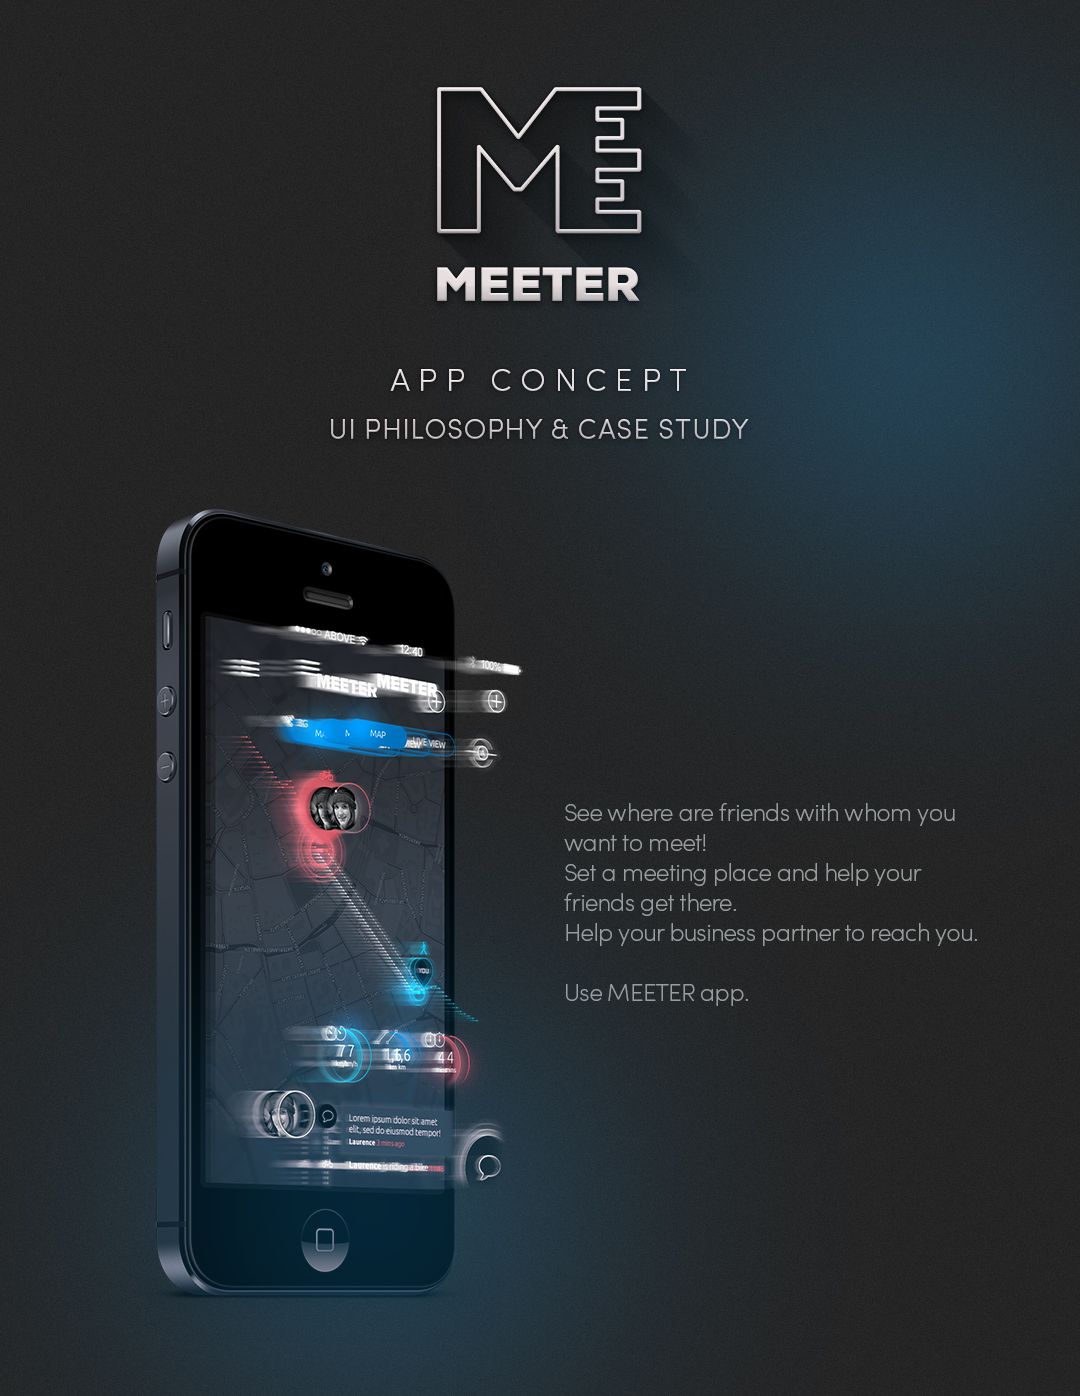 meeter app concept application meeting map navigation friends Interface